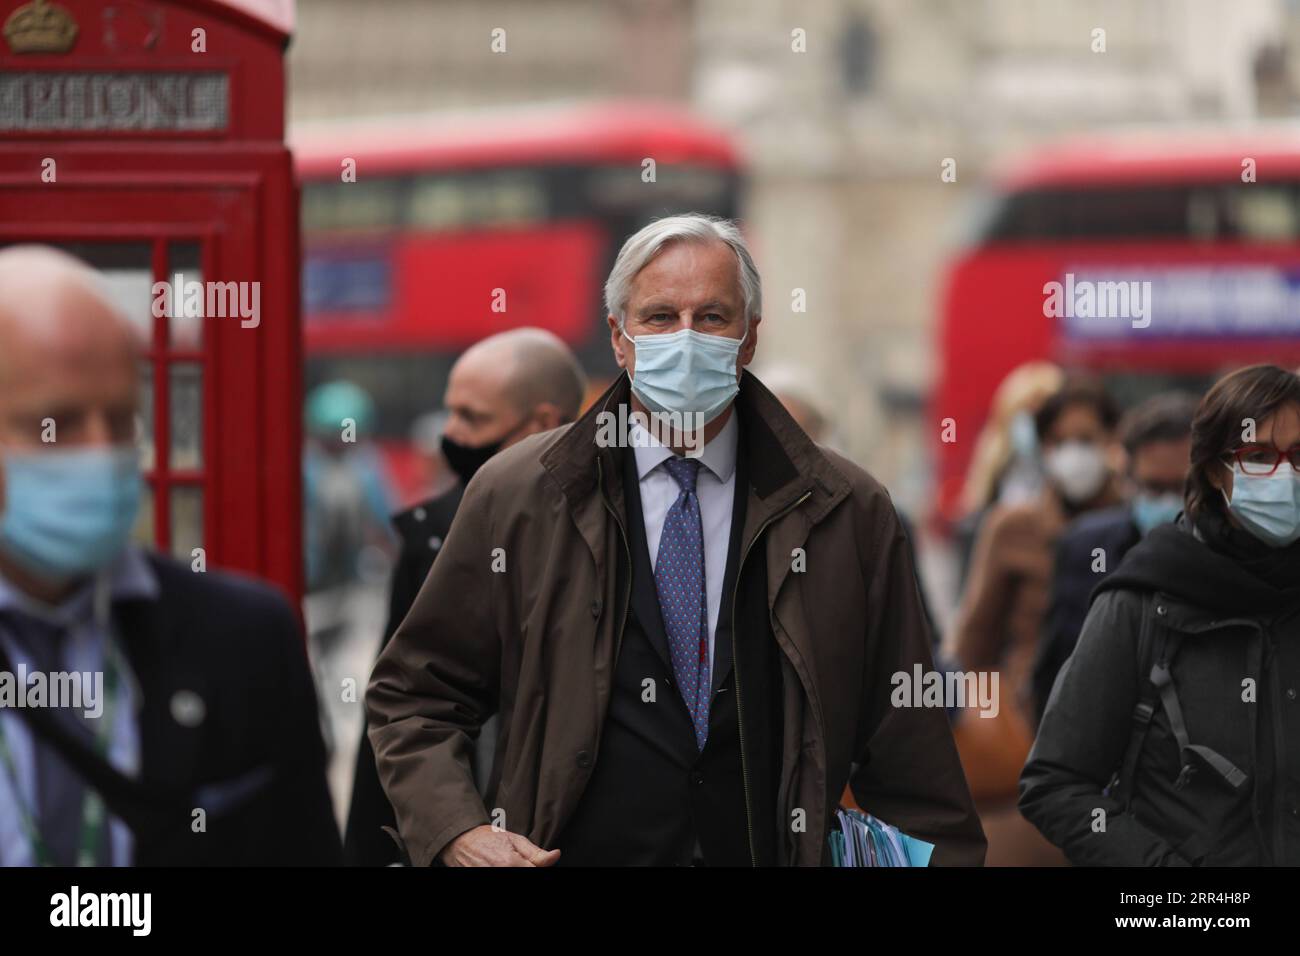 201205 -- LONDON, 5. Dez. 2020 -- Aktenfoto vom 28. November 2020 zeigt, wie Michel Barnier, Chef des Brexit-Verhandlungsführers der Europäischen Union, nach Handelsgesprächen mit Großbritannien in London, Großbritannien, ausreist. Nach einer Woche intensiver Handelsverhandlungen in London einigten sich die Verhandlungsführer aus Großbritannien und der Europäischen Union am Freitag darauf, die Gespräche aufgrund erheblicher Unterschiede zu unterbrechen. Foto von /Xinhua BRITAIN-LONDON-BREXIT-TRADE TALKS-PAUSING TimxIreland PUBLICATIONxNOTxINxCHN Stockfoto